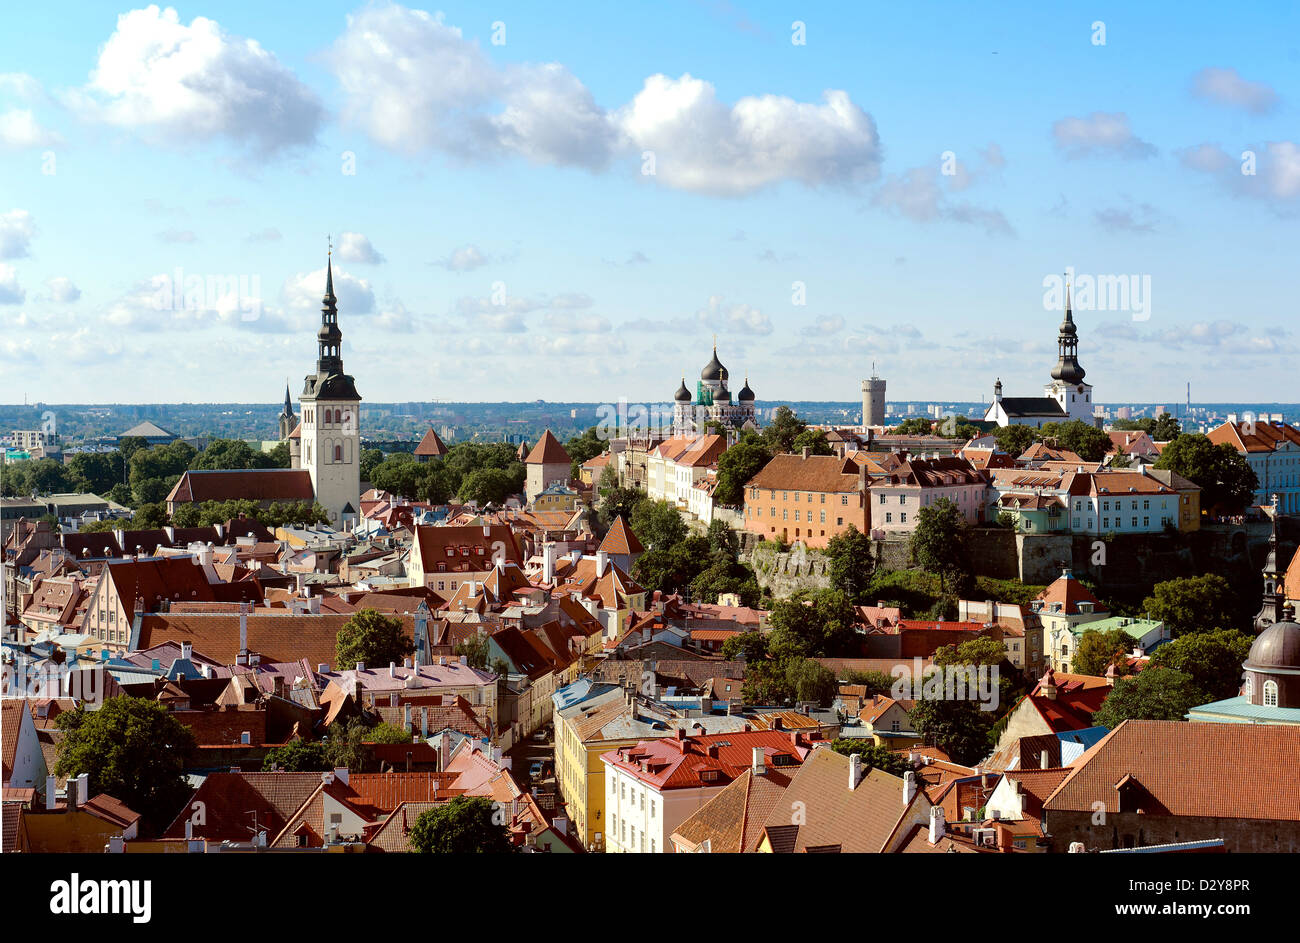 Vue sur la vieille ville (Tallinn, Estonie) Banque D'Images